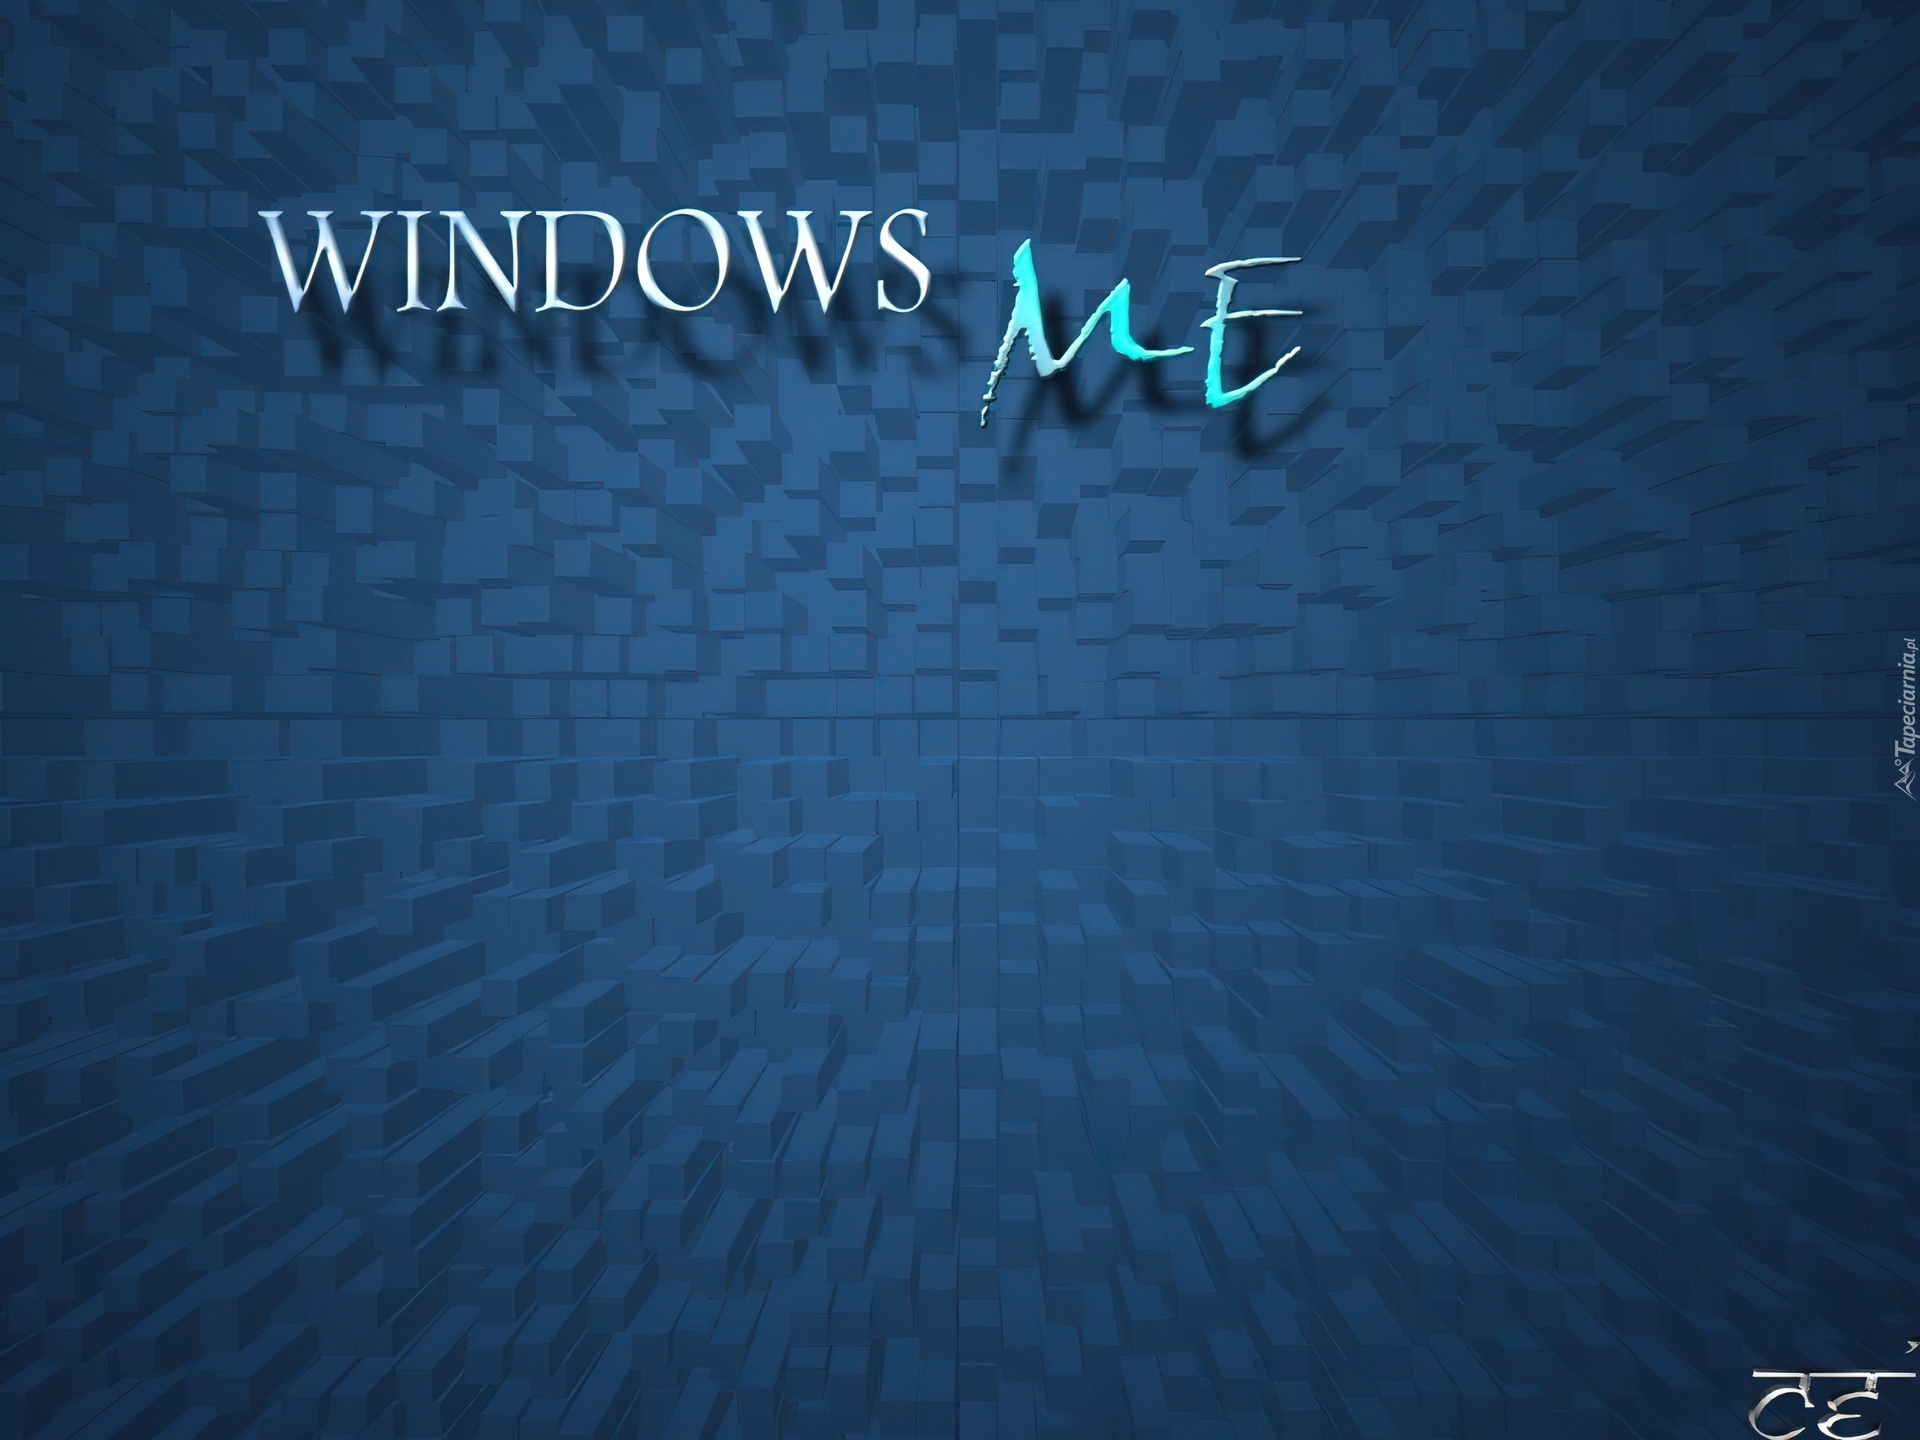 Windows Milenium